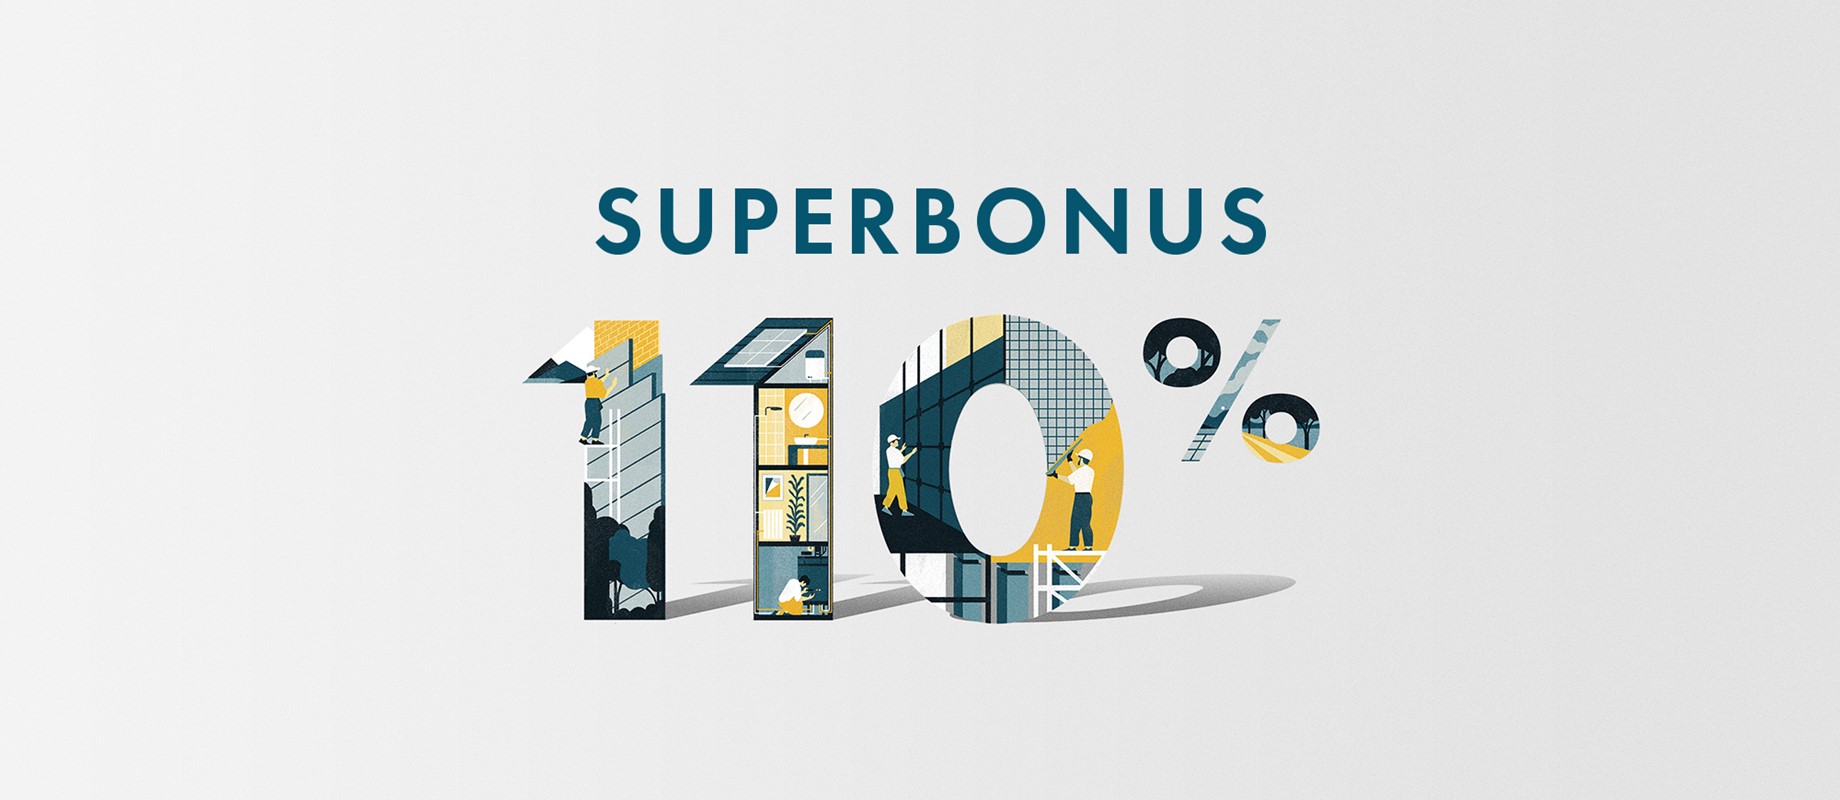 Detrazione fiscale fino al 110% della spesa: approfitta del Superbonus 